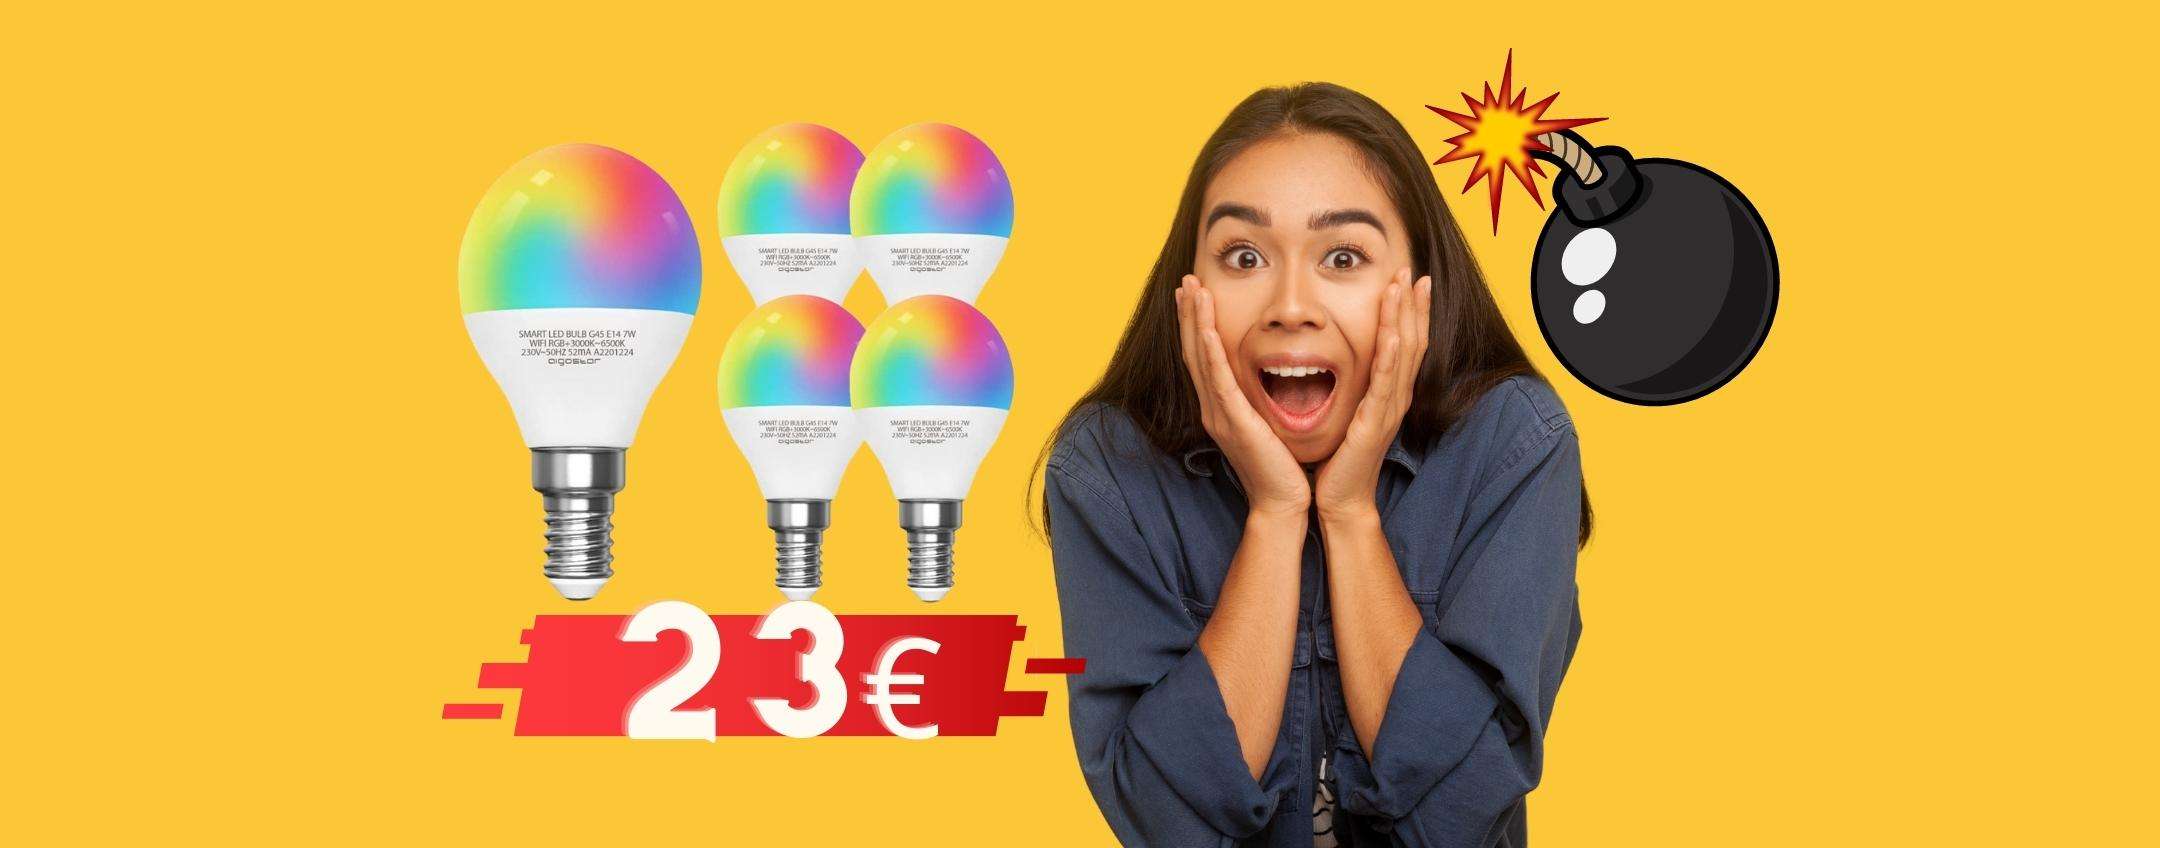 5 lampadine smart colorate a meno di 24€, offerta BOMBA di